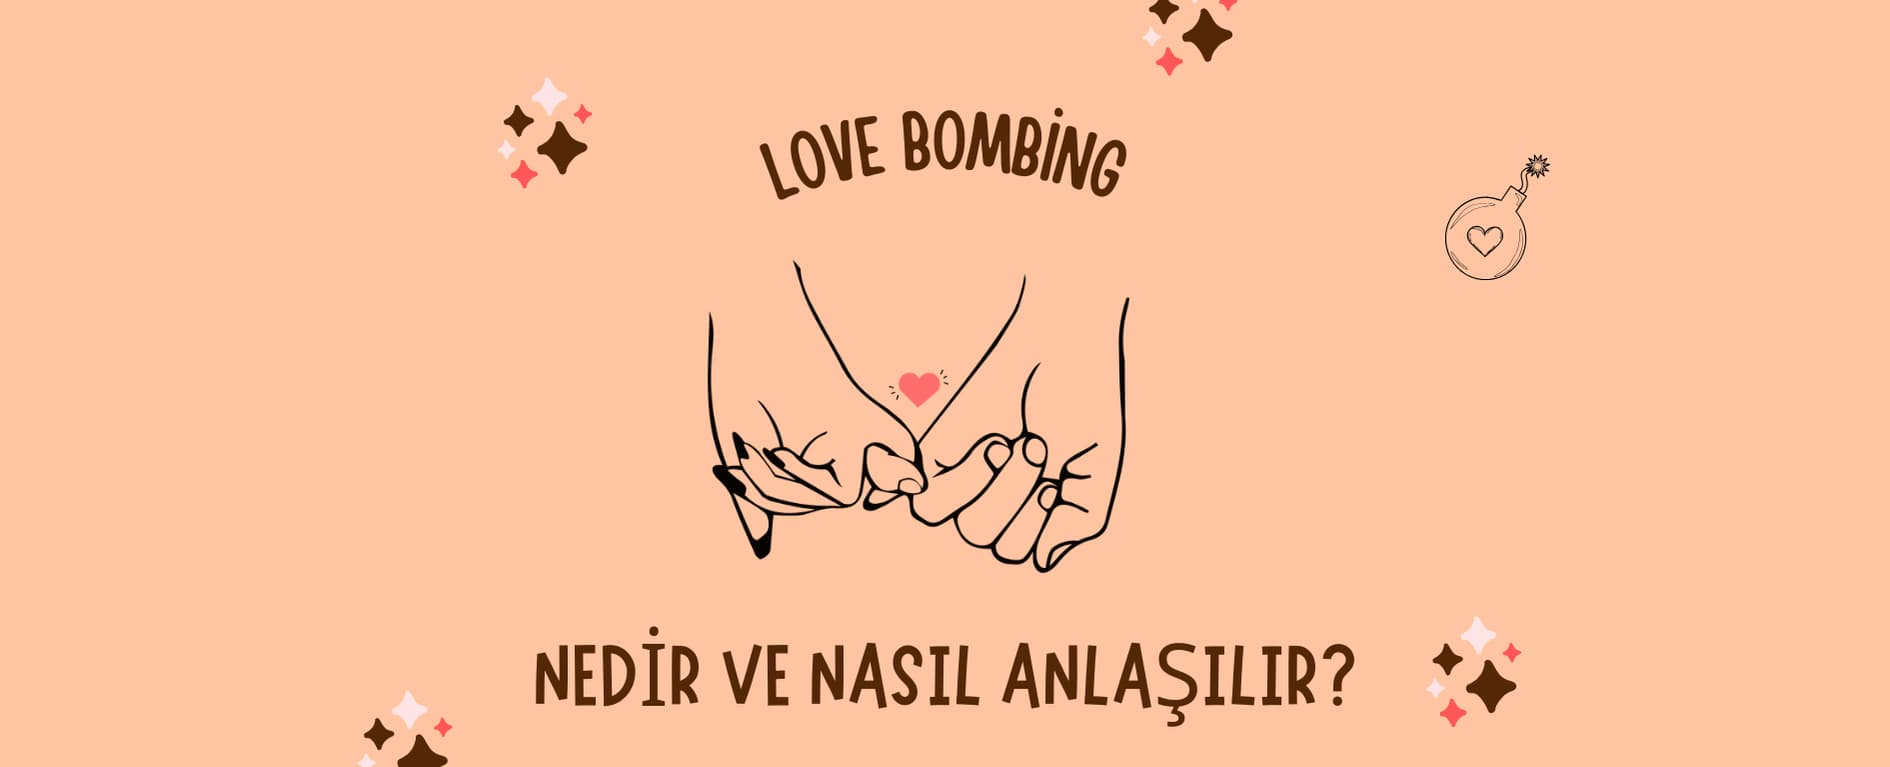 Love Bombing Nedir? Love Bombing Belirtileri | 2Face Psikoloji